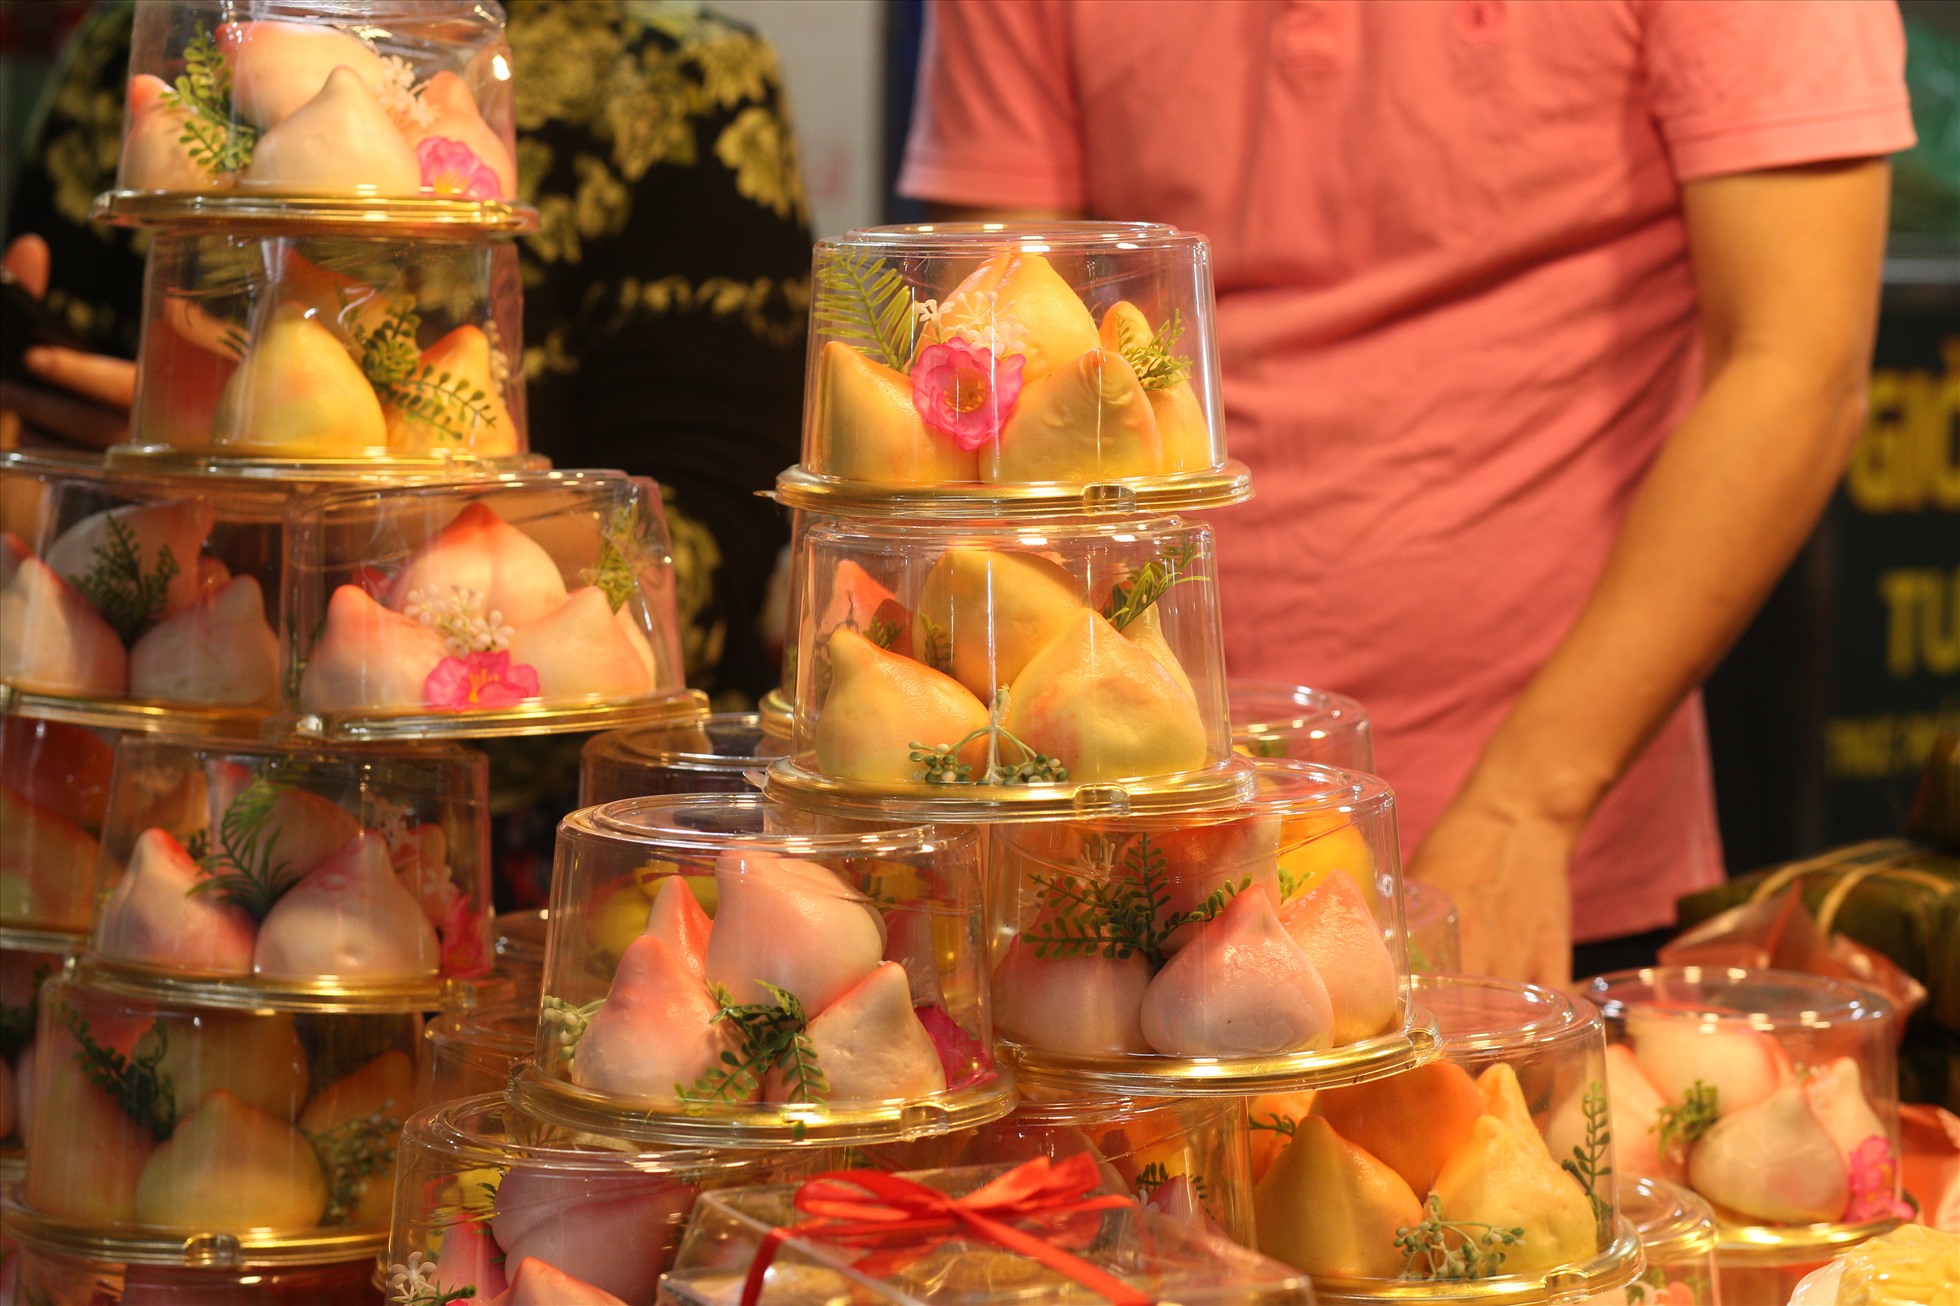 Theo anh Nguyễn Hoàng Quân, chủ cửa hàng Cô Hậu chuyên bán các mặt hàng chay cho hay, mặt hàng bánh bao với màu sắc và hình dáng bắt mắt cũng thu hút nhiều khách mua.